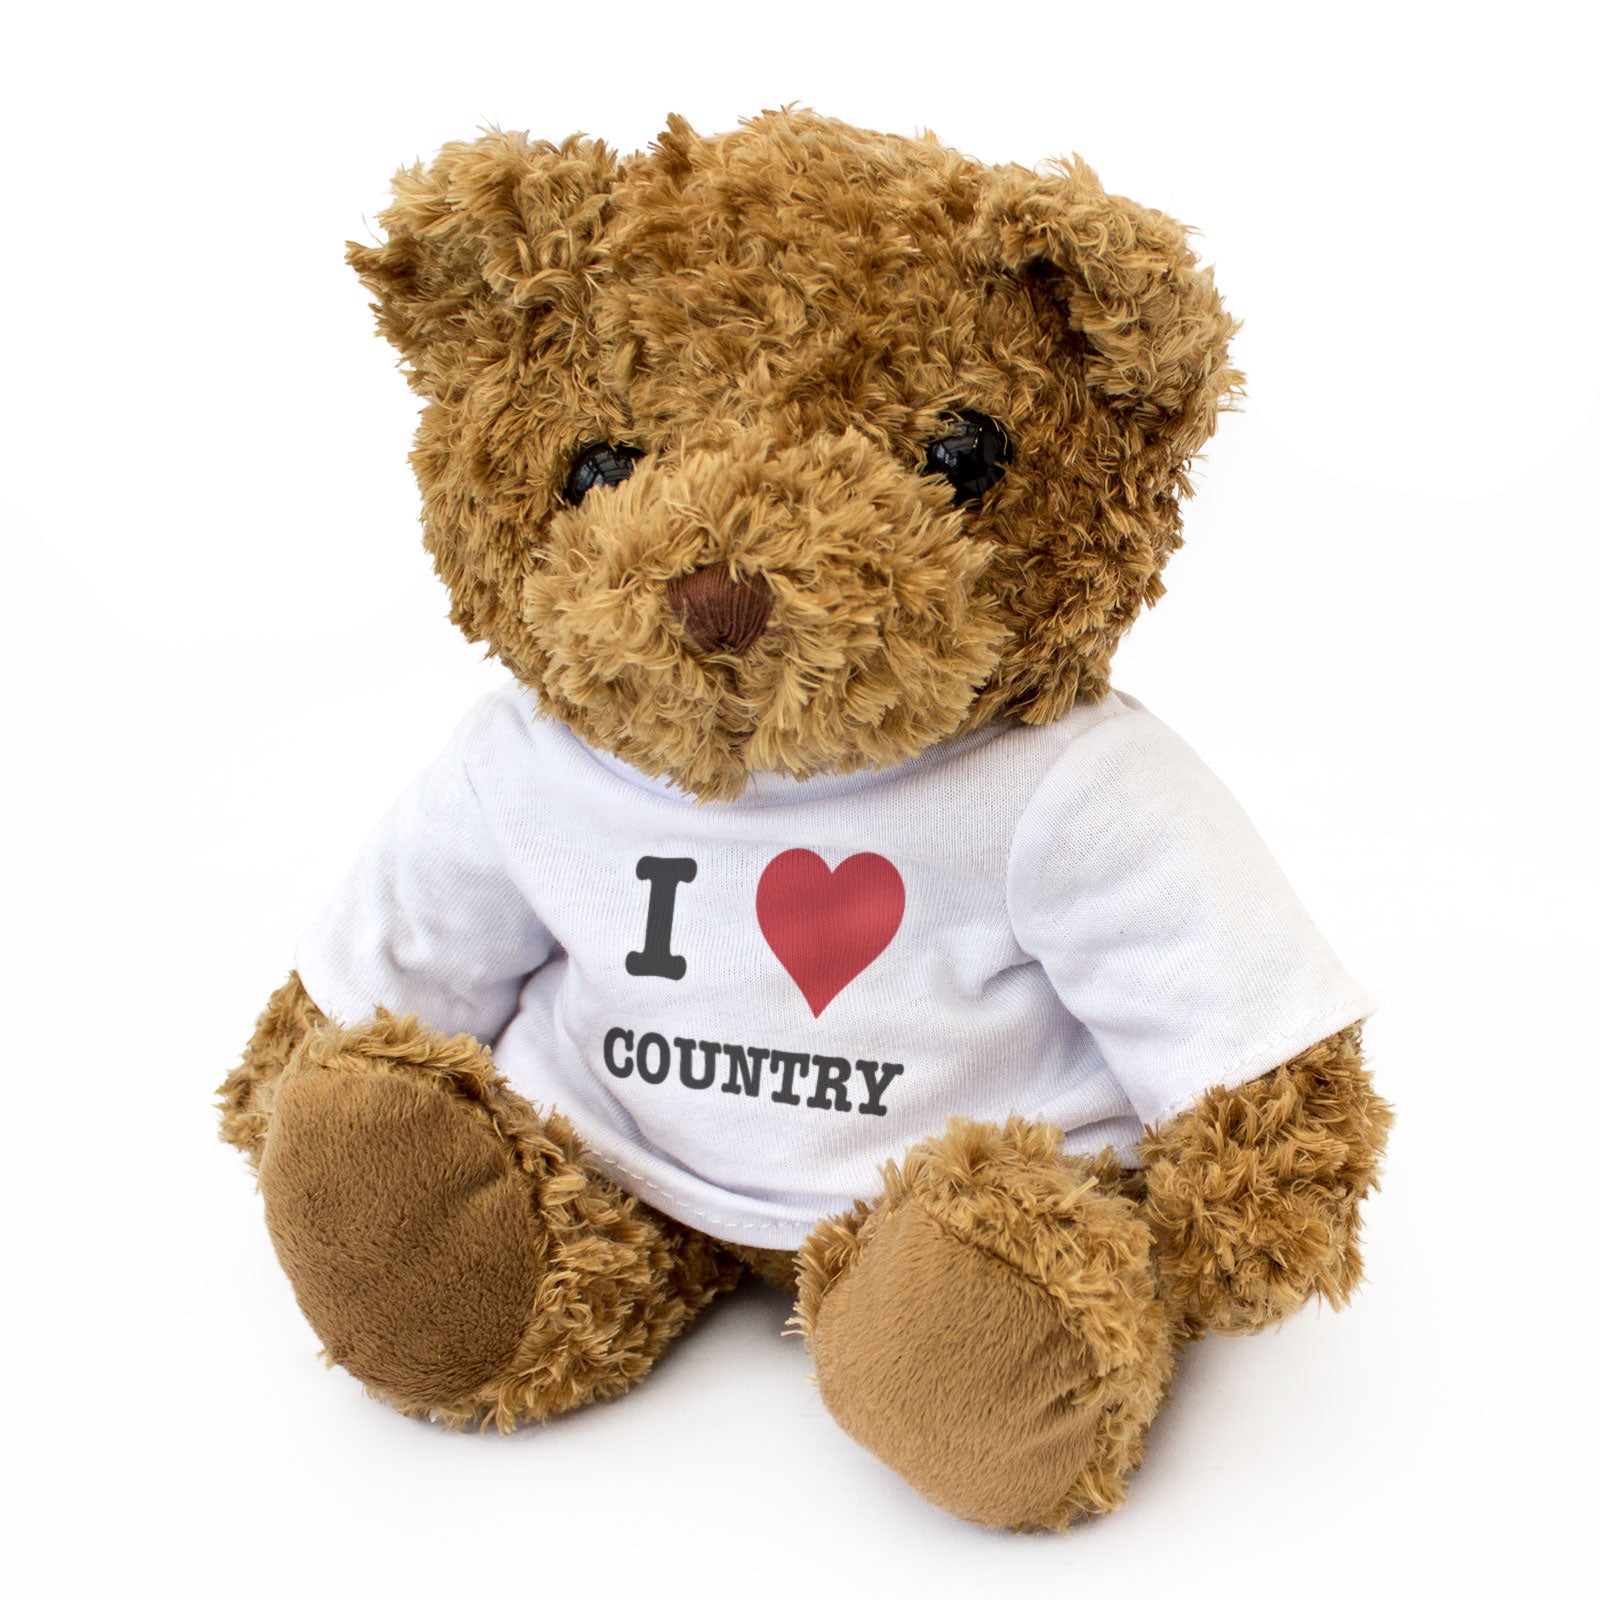 I Love Country - Teddy Bear